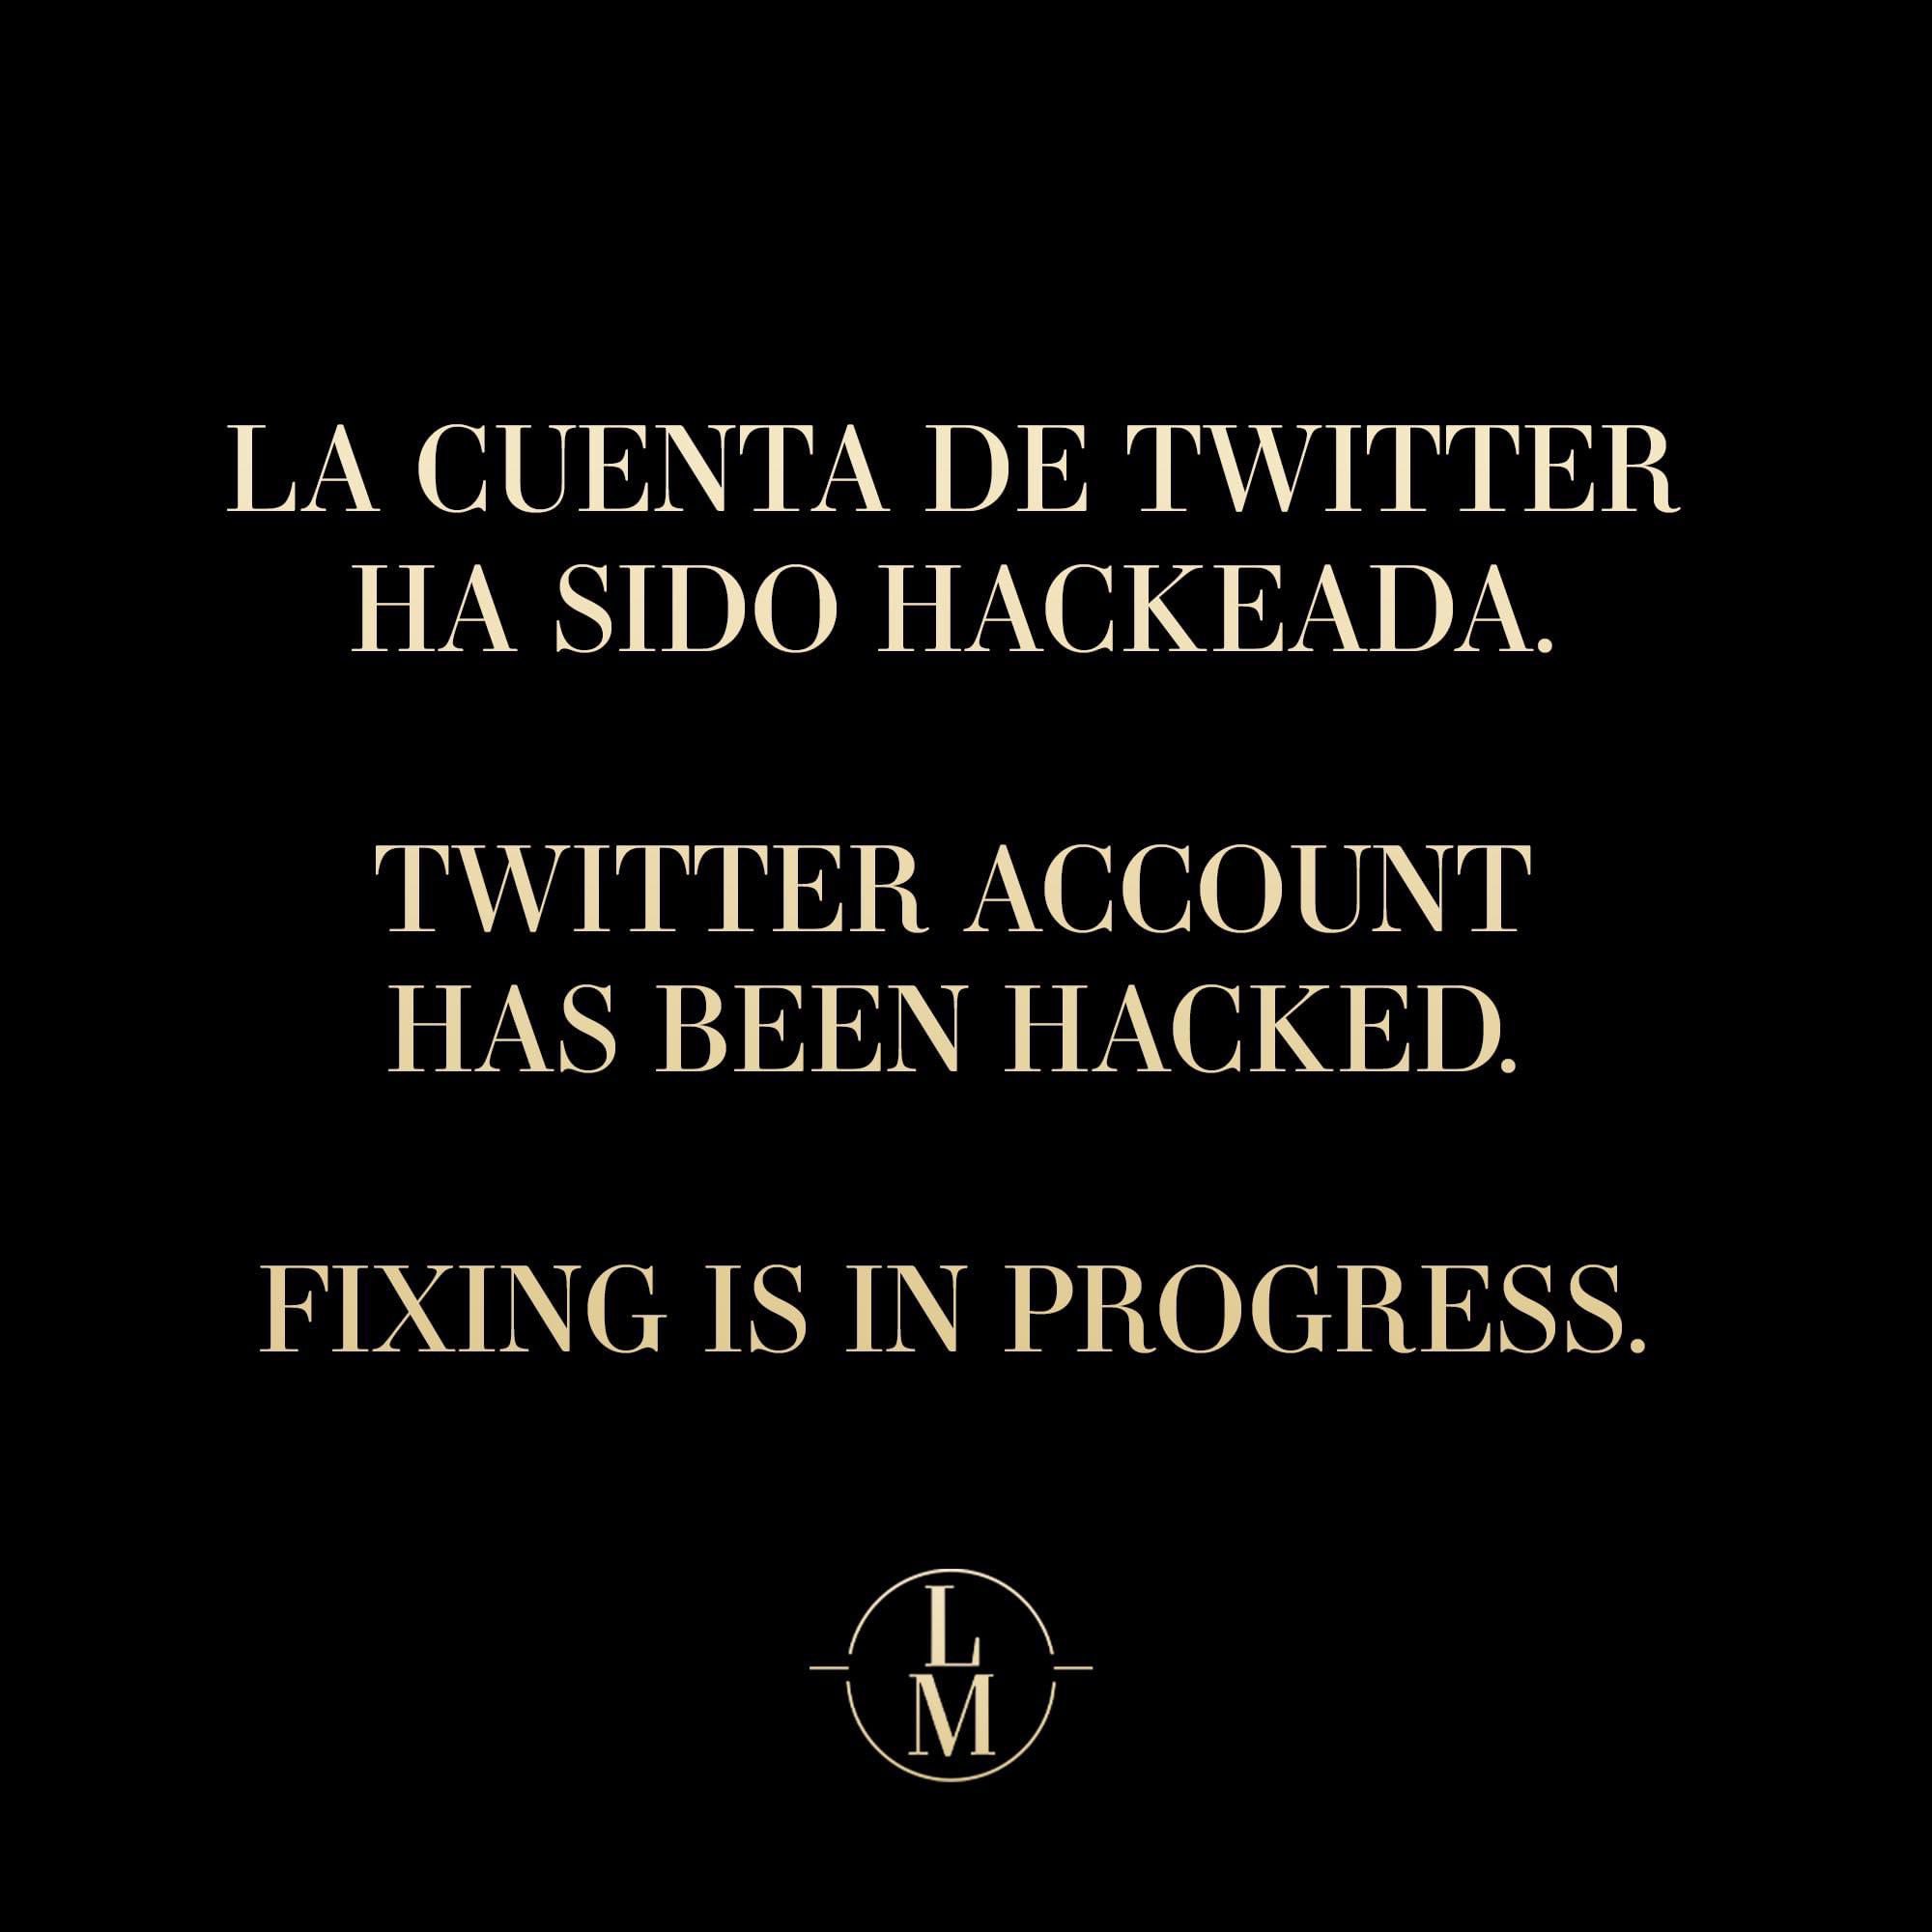 Luis Miguel sobre el hackeo a su cuenta de Twitter (Facebook/Luis Miguel)